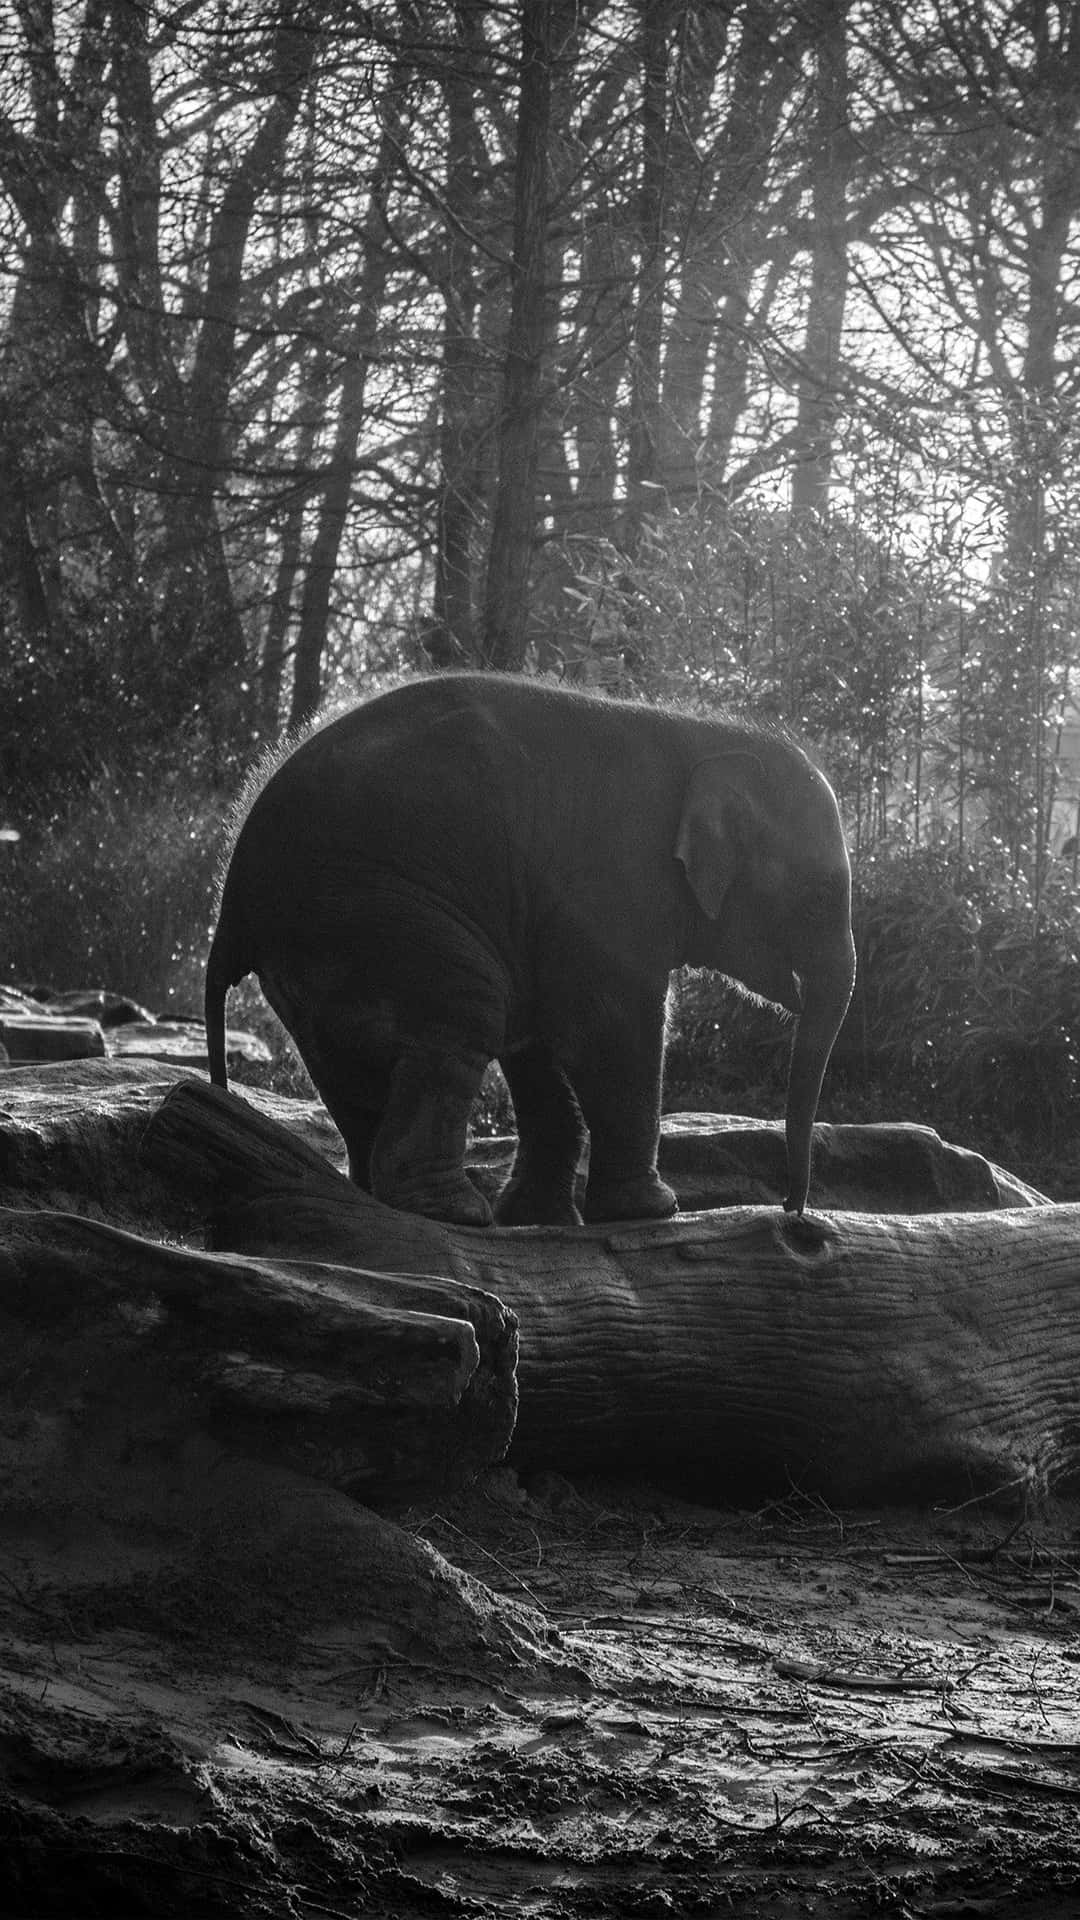 Questaimmagine Di Un Adorabile Elefante Ci Mostra Quanto Maestosi E Belli Possano Essere Questi Animali.